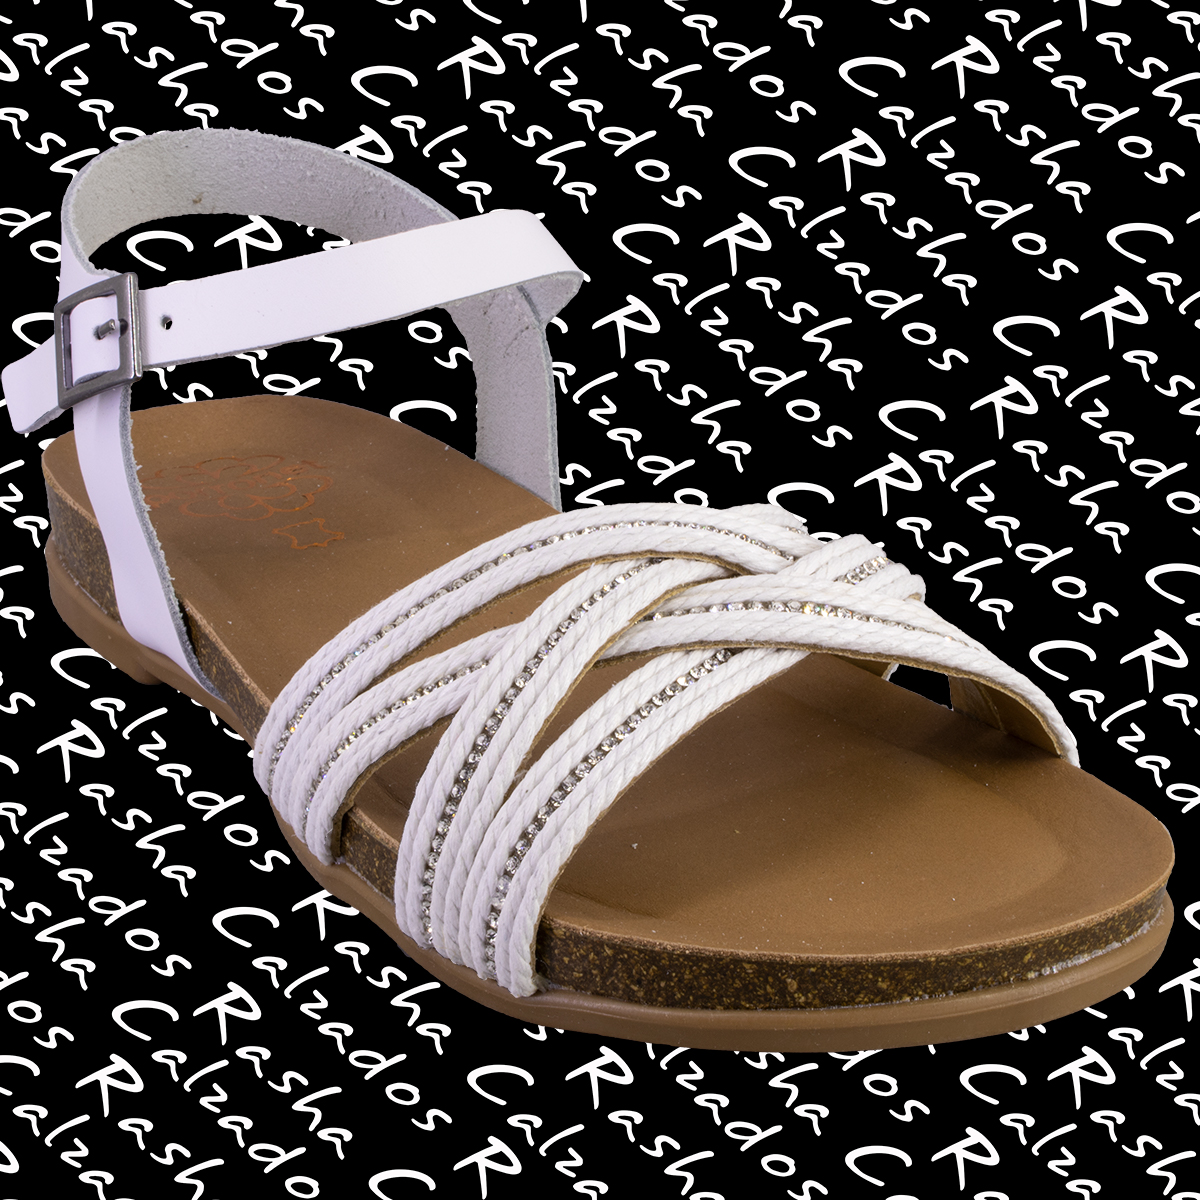 Las sandalias del verano. Frescas, cómodas y con mucho estilo. #PorronetShoes 

💻#TiendaOnline :
CalzadosRasha.com

#CalzadosRasha #RashaShoes #Rasha #SandaliasPlanas #ZapatosyBolsos #MadeInSpain #HechosEnEspaña #CalzadoEspañol #Sandalias #MySandals